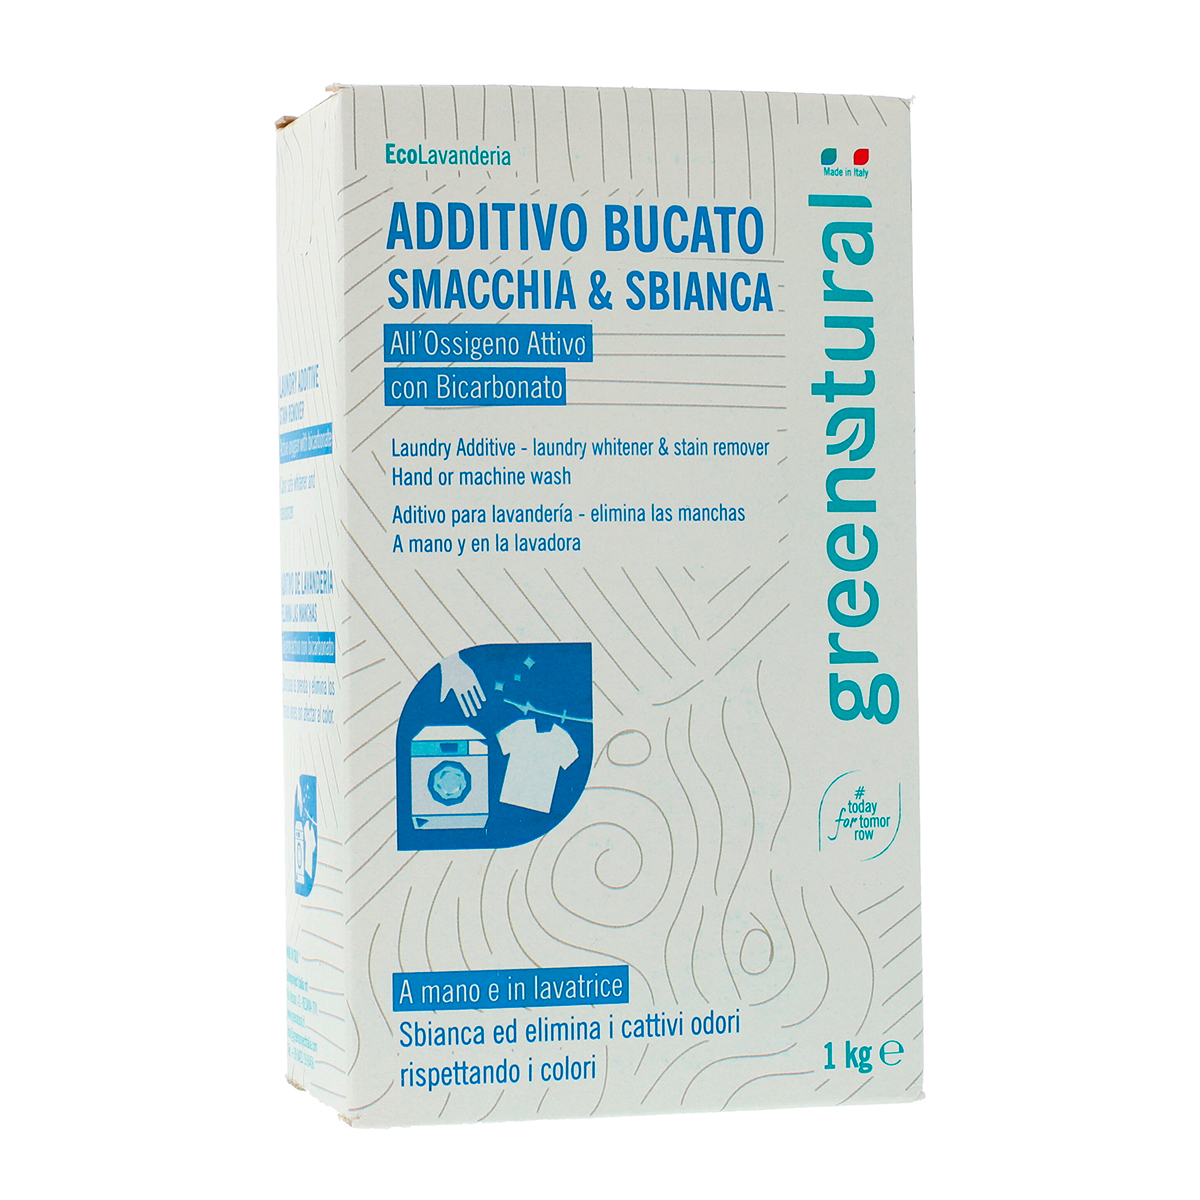 Additivo Bucato - Smacchia & Sbianca - Greenatural - Detergenza e Cosmetica  Naturale - Sito Ufficiale